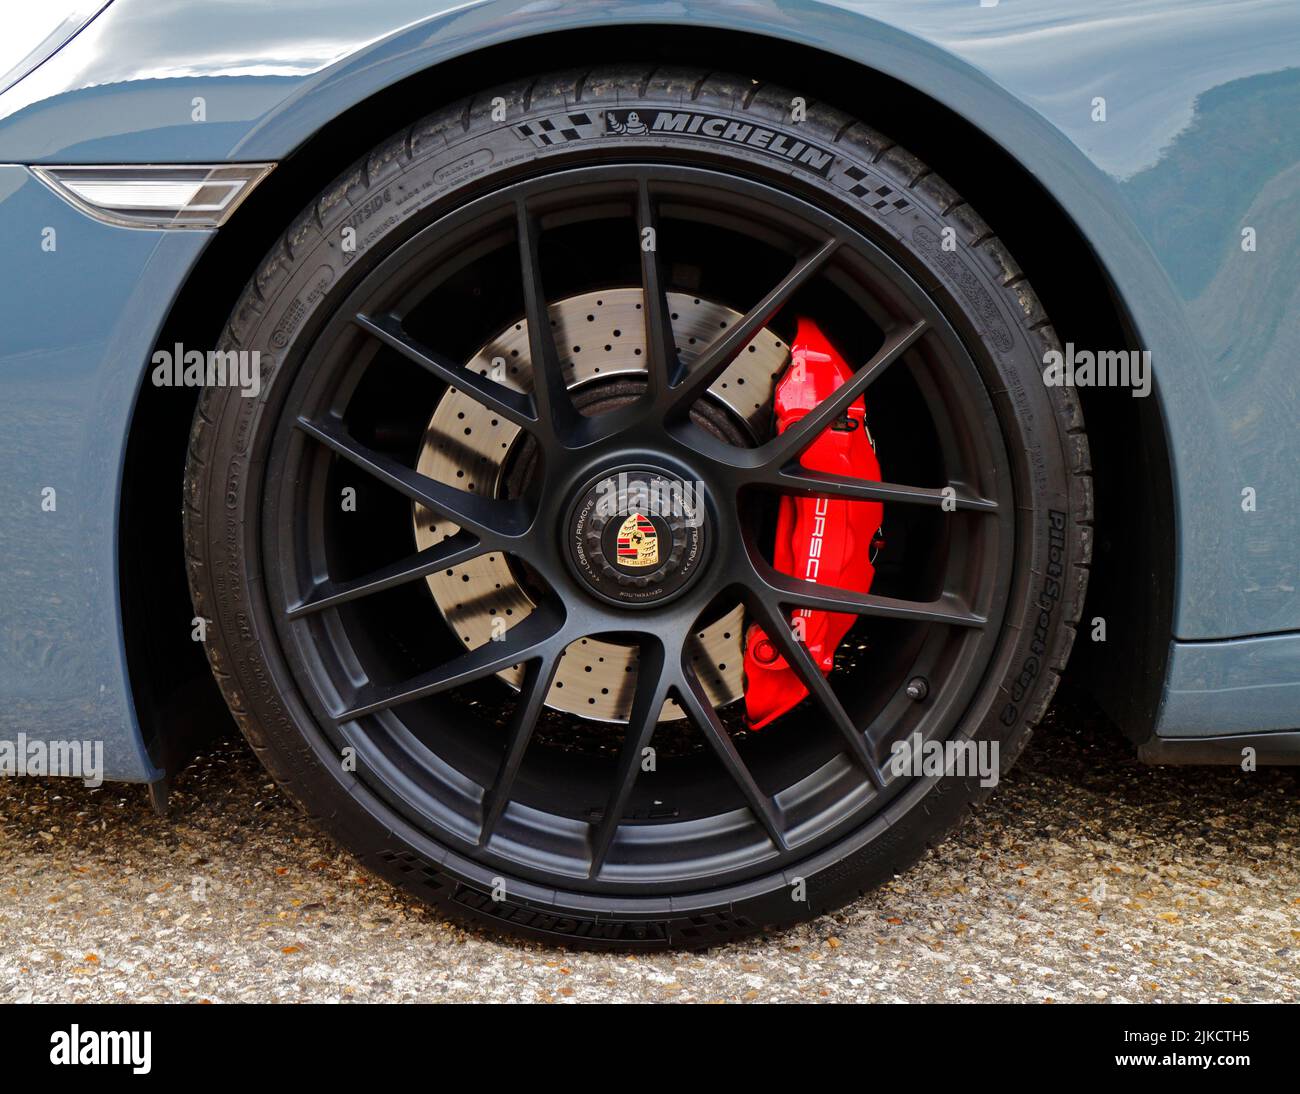 Detalle de una rueda de aleación de diseño Porsche 911 Carrera GTS RS Spyder con pinza de freno roja Foto de stock